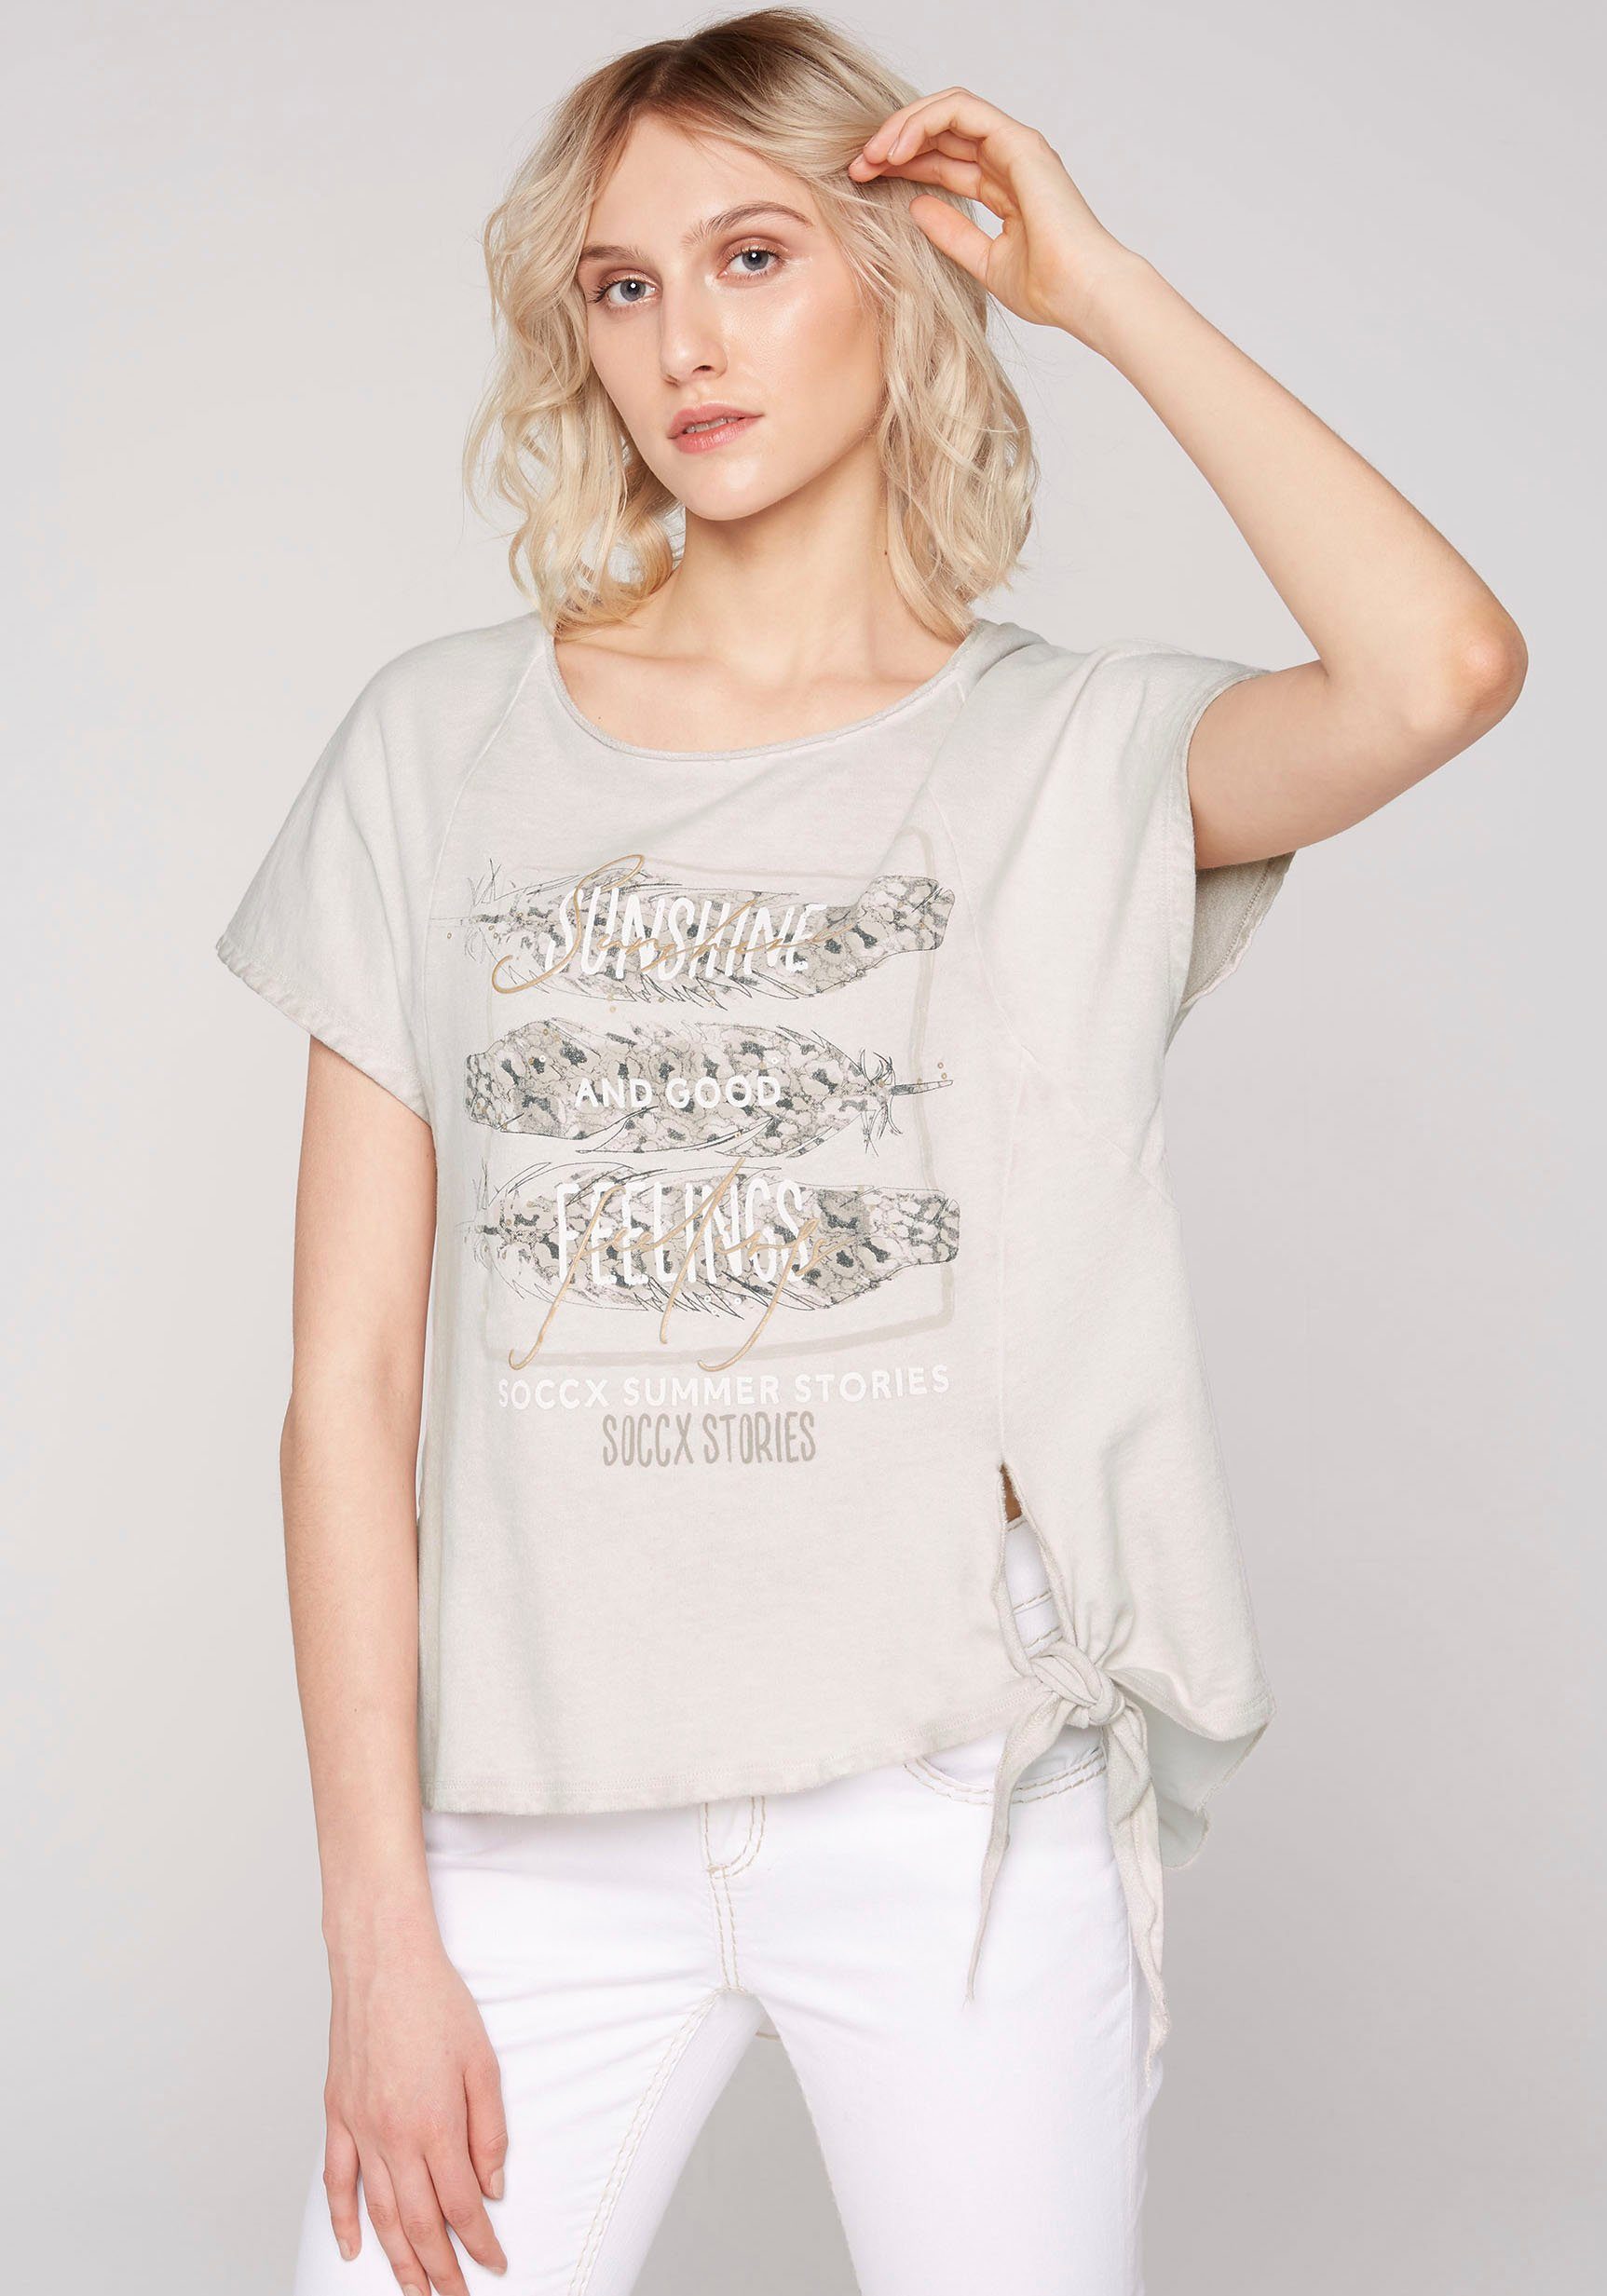 SOCCX T-Shirt mit Knotendetail am Saum online kaufen | OTTO